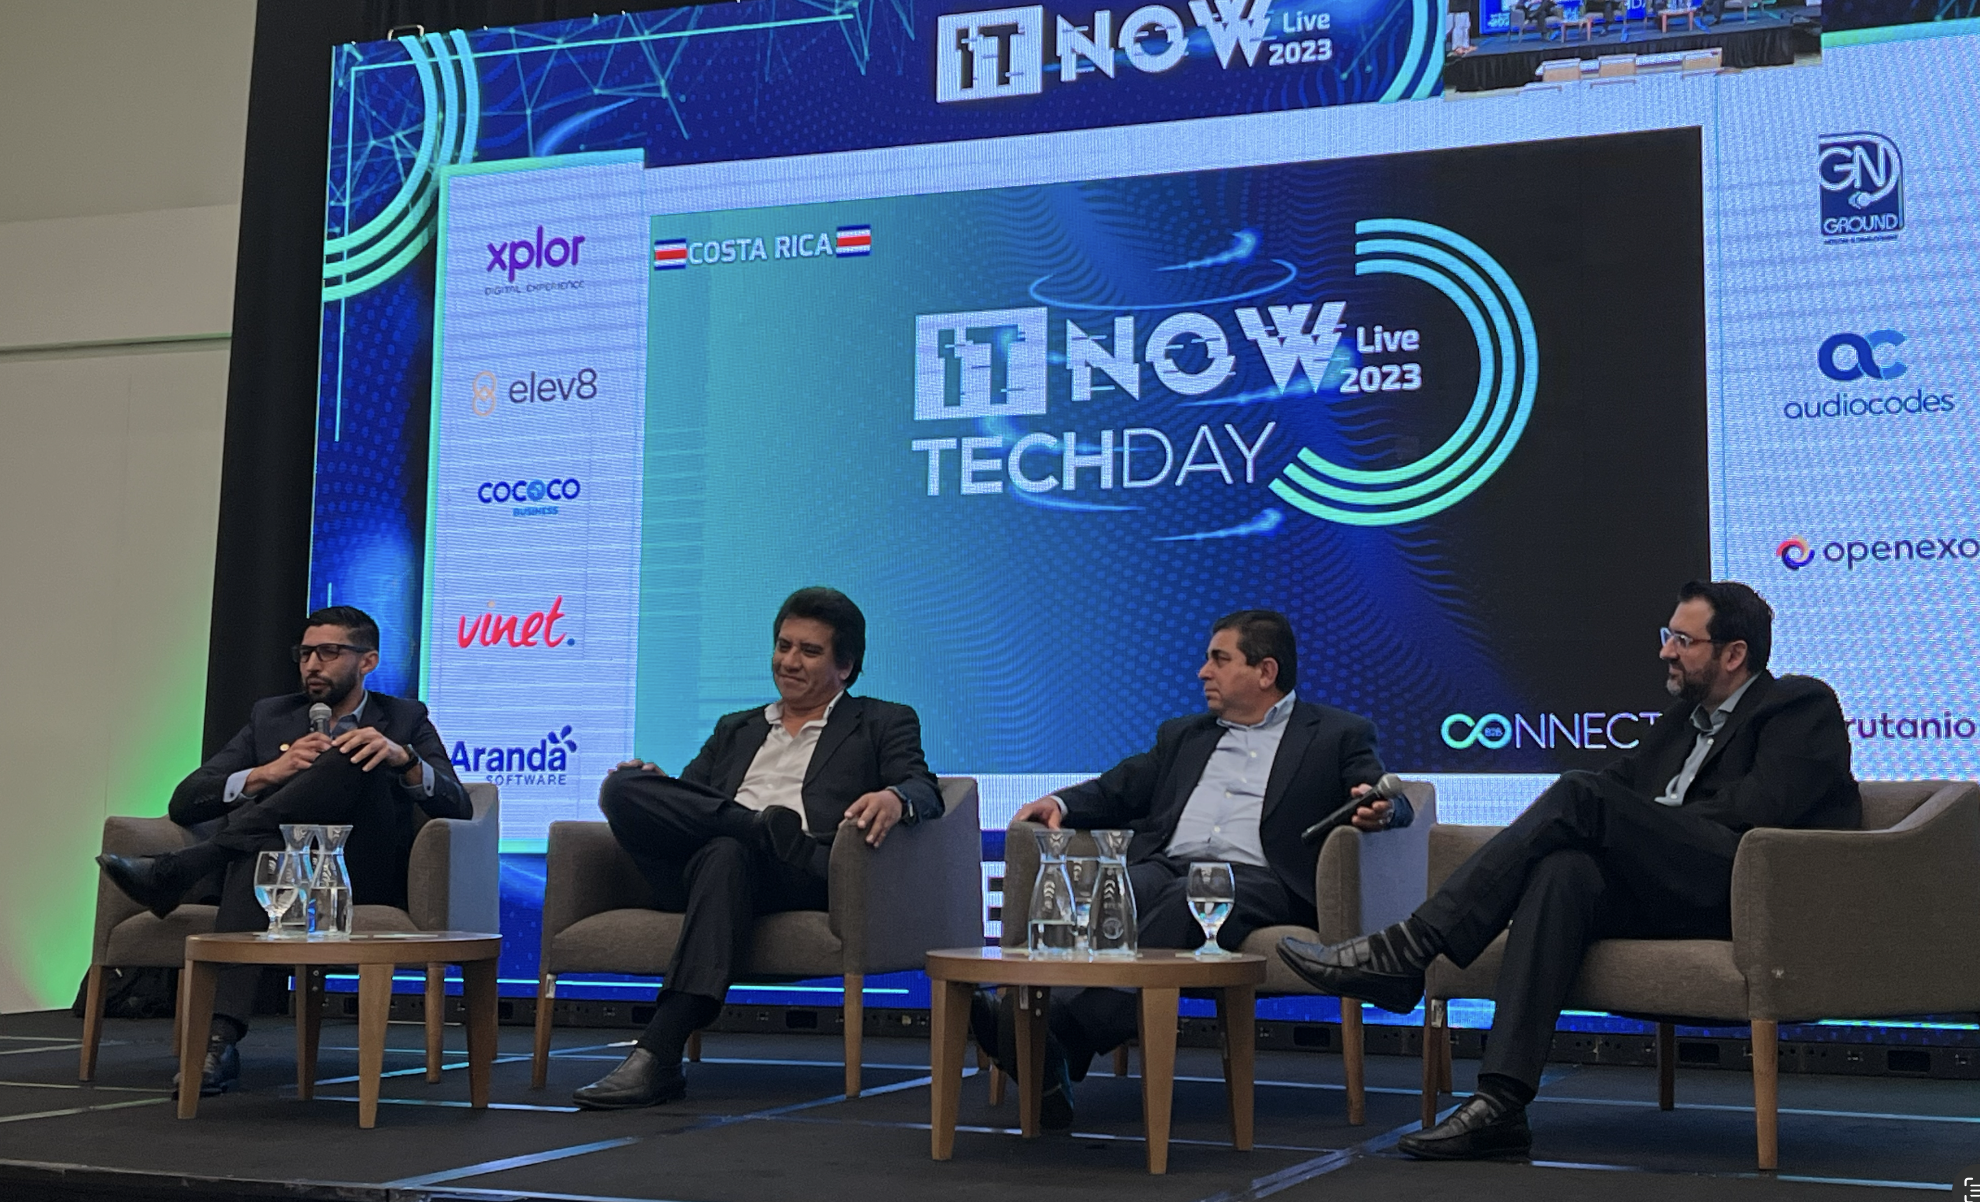 Fotografía plano general de los panelistas con la imagen de fondo del logo del Tech Day 